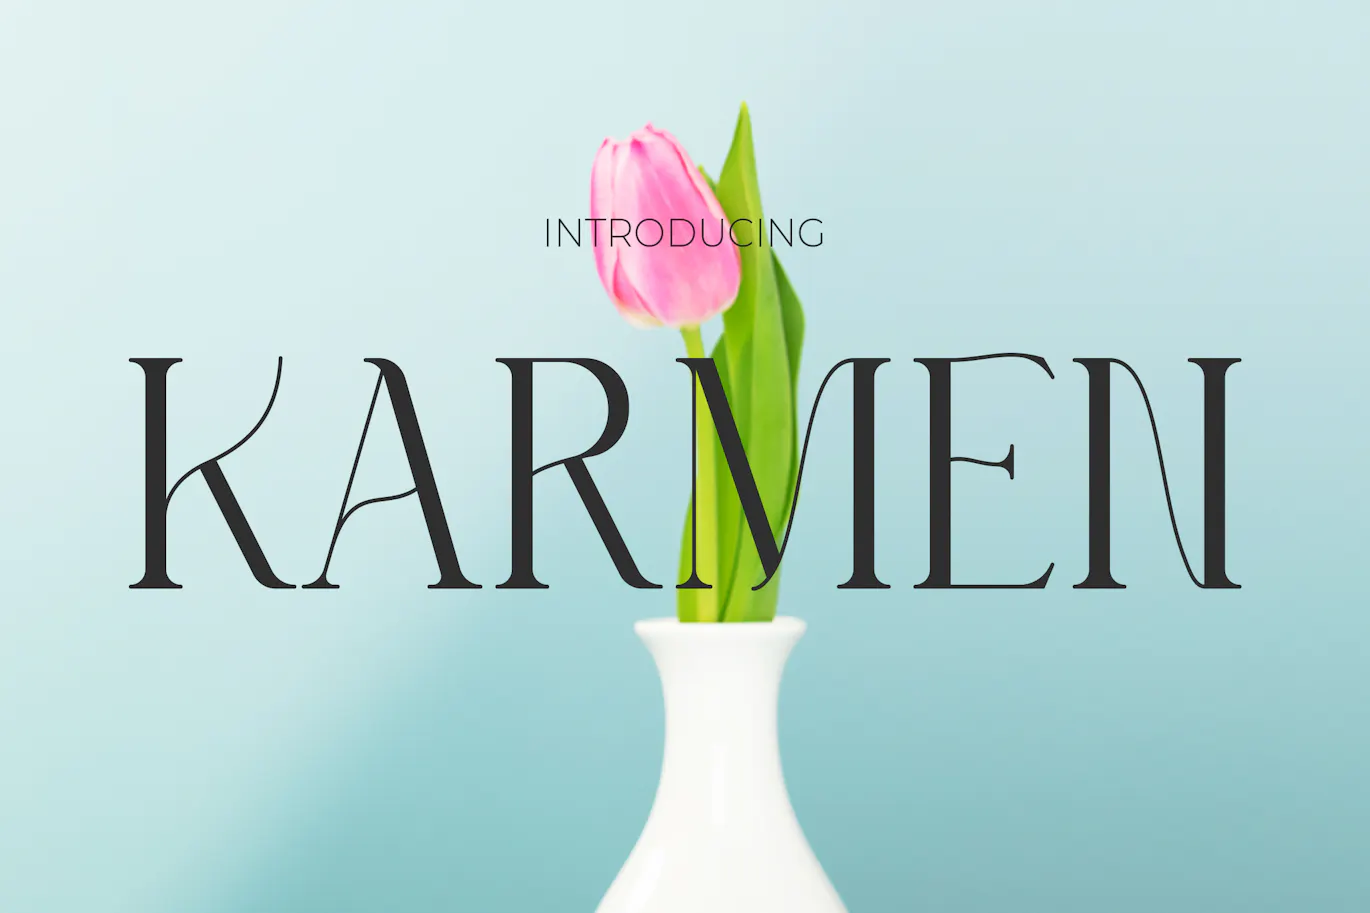 优雅线条与粗线条结合的现代英文衬线字体 - Karmen 设计字体 第1张